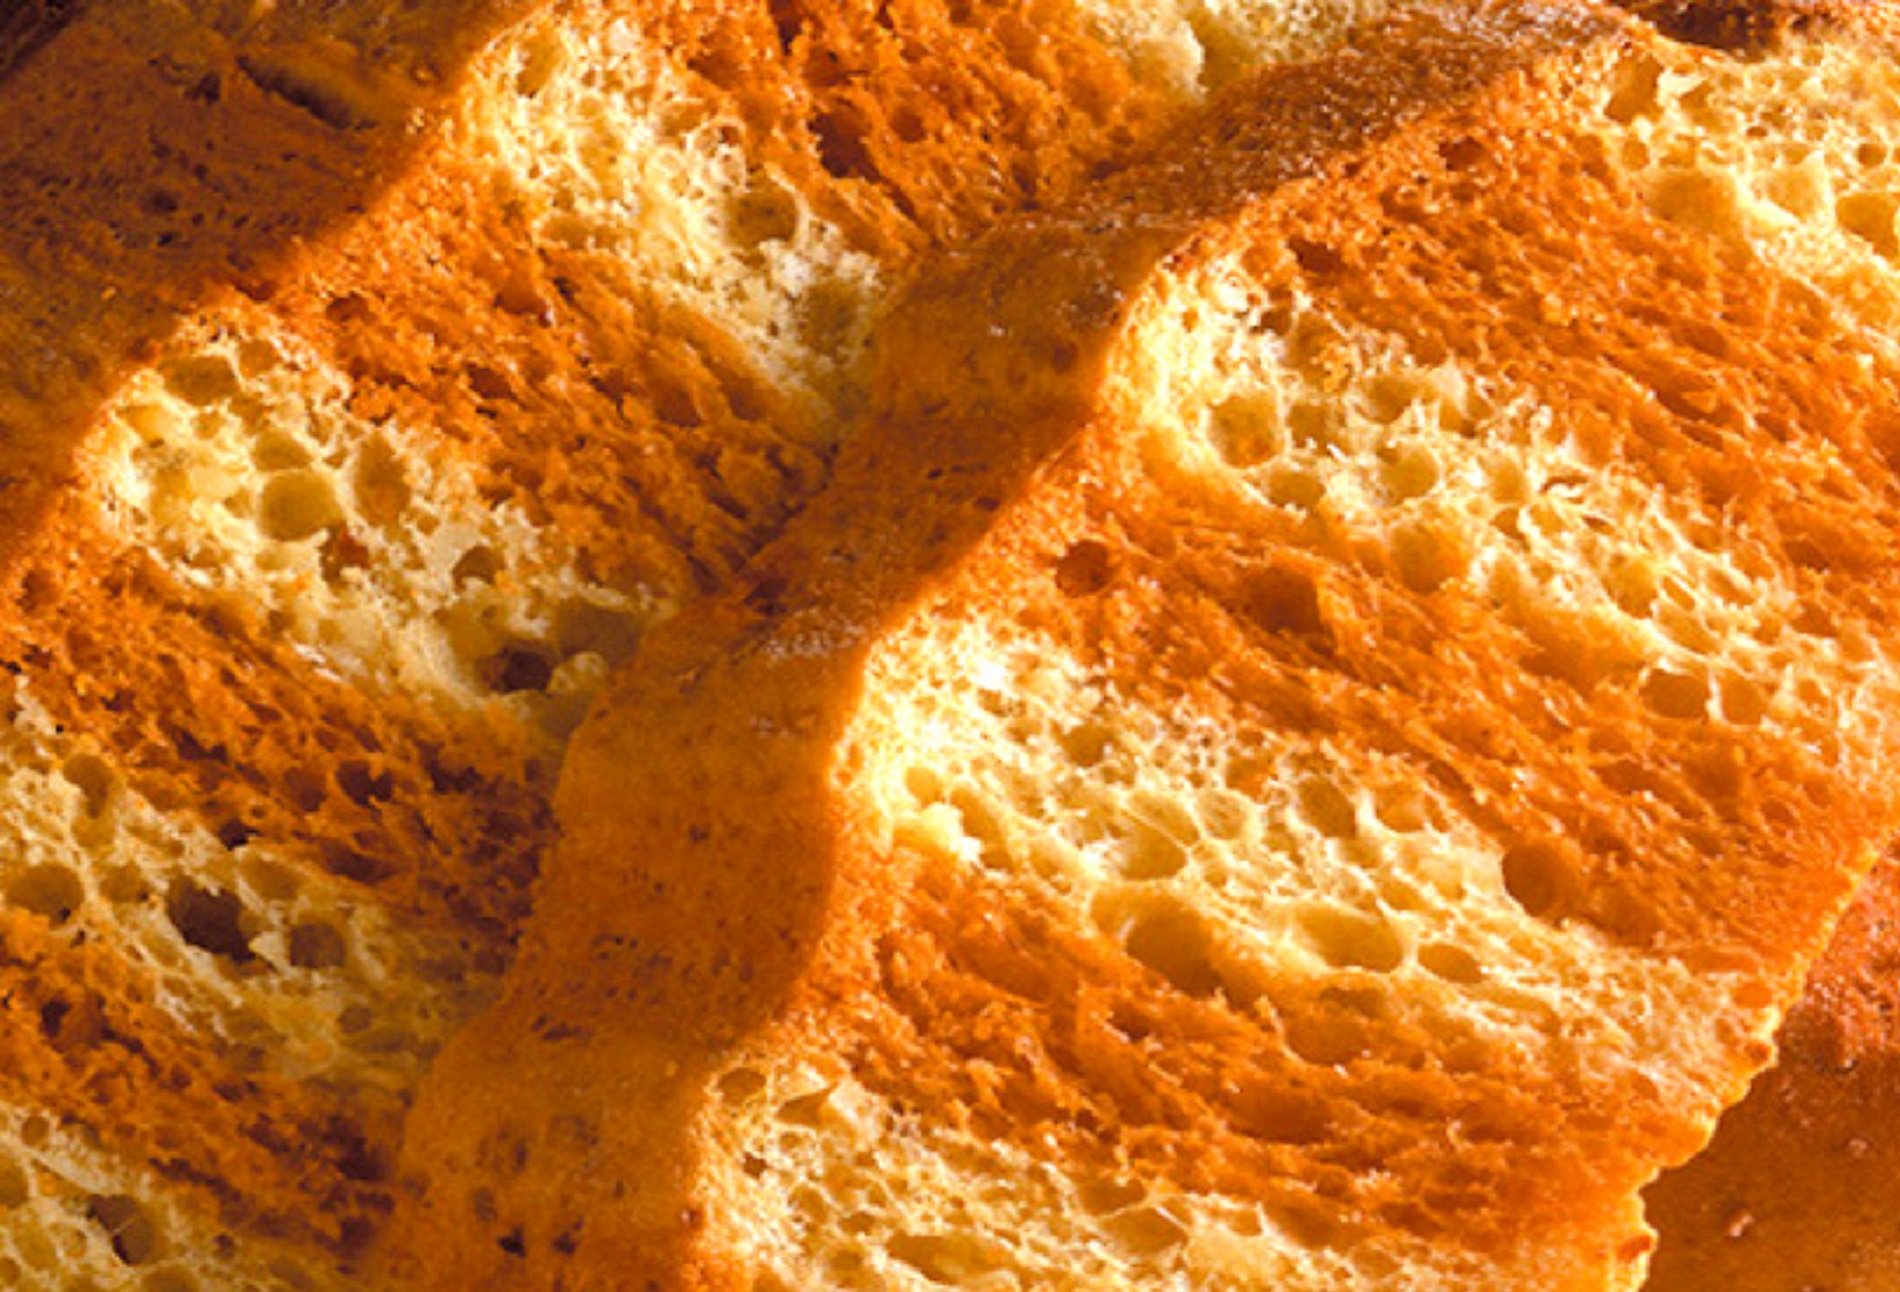 El millor pa de Sant Jordi 2023 és per aquest forn centenari de Barcelona